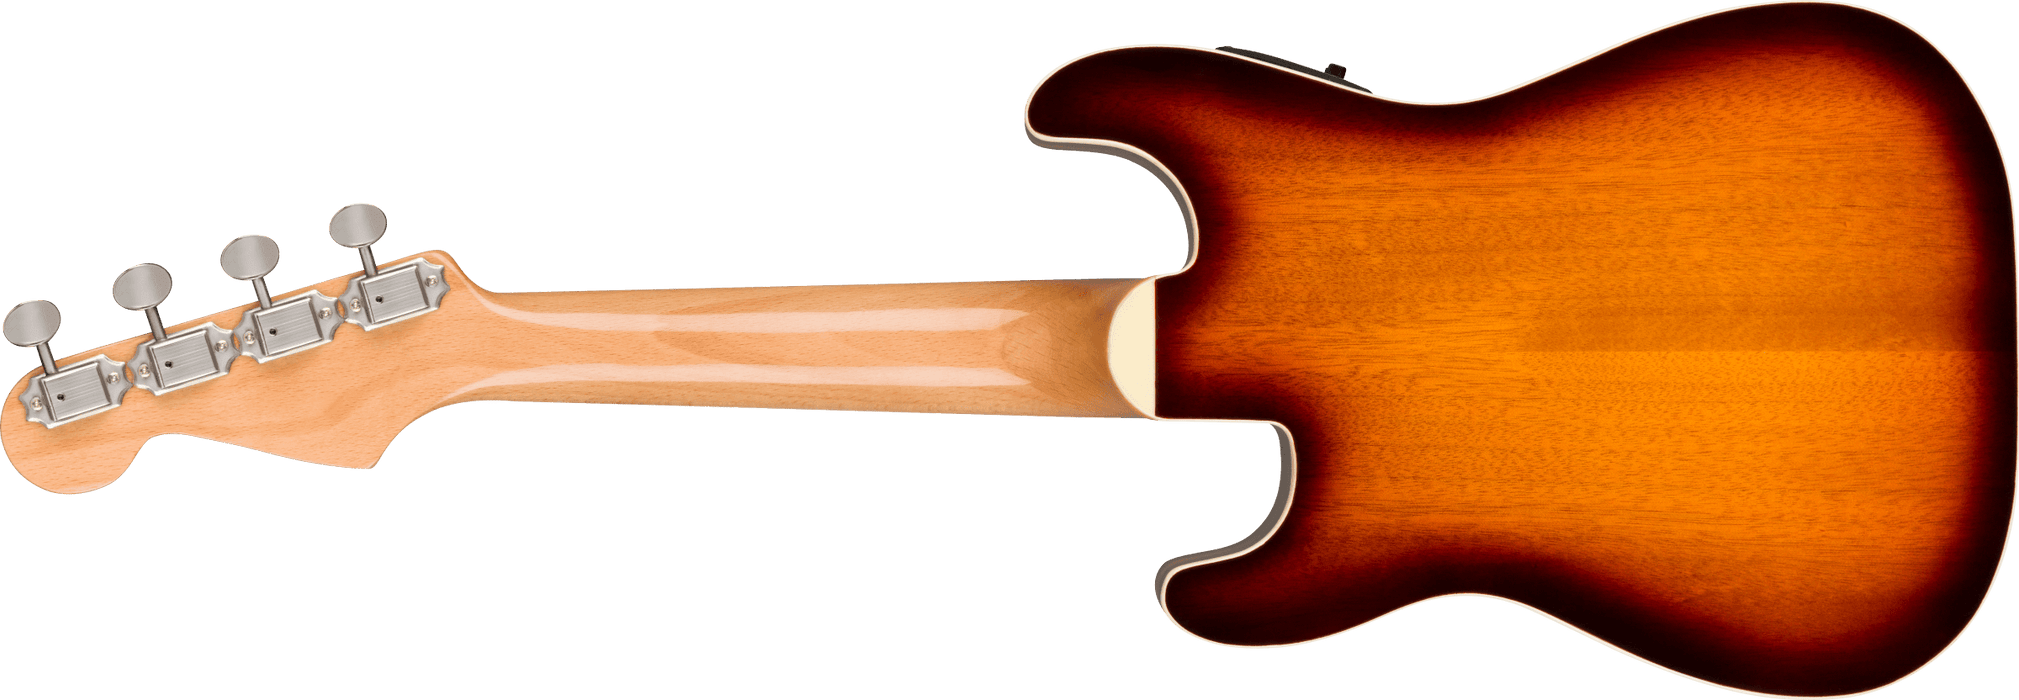 Fender Fullerton Strat® Concert Ukulele - Sunburst